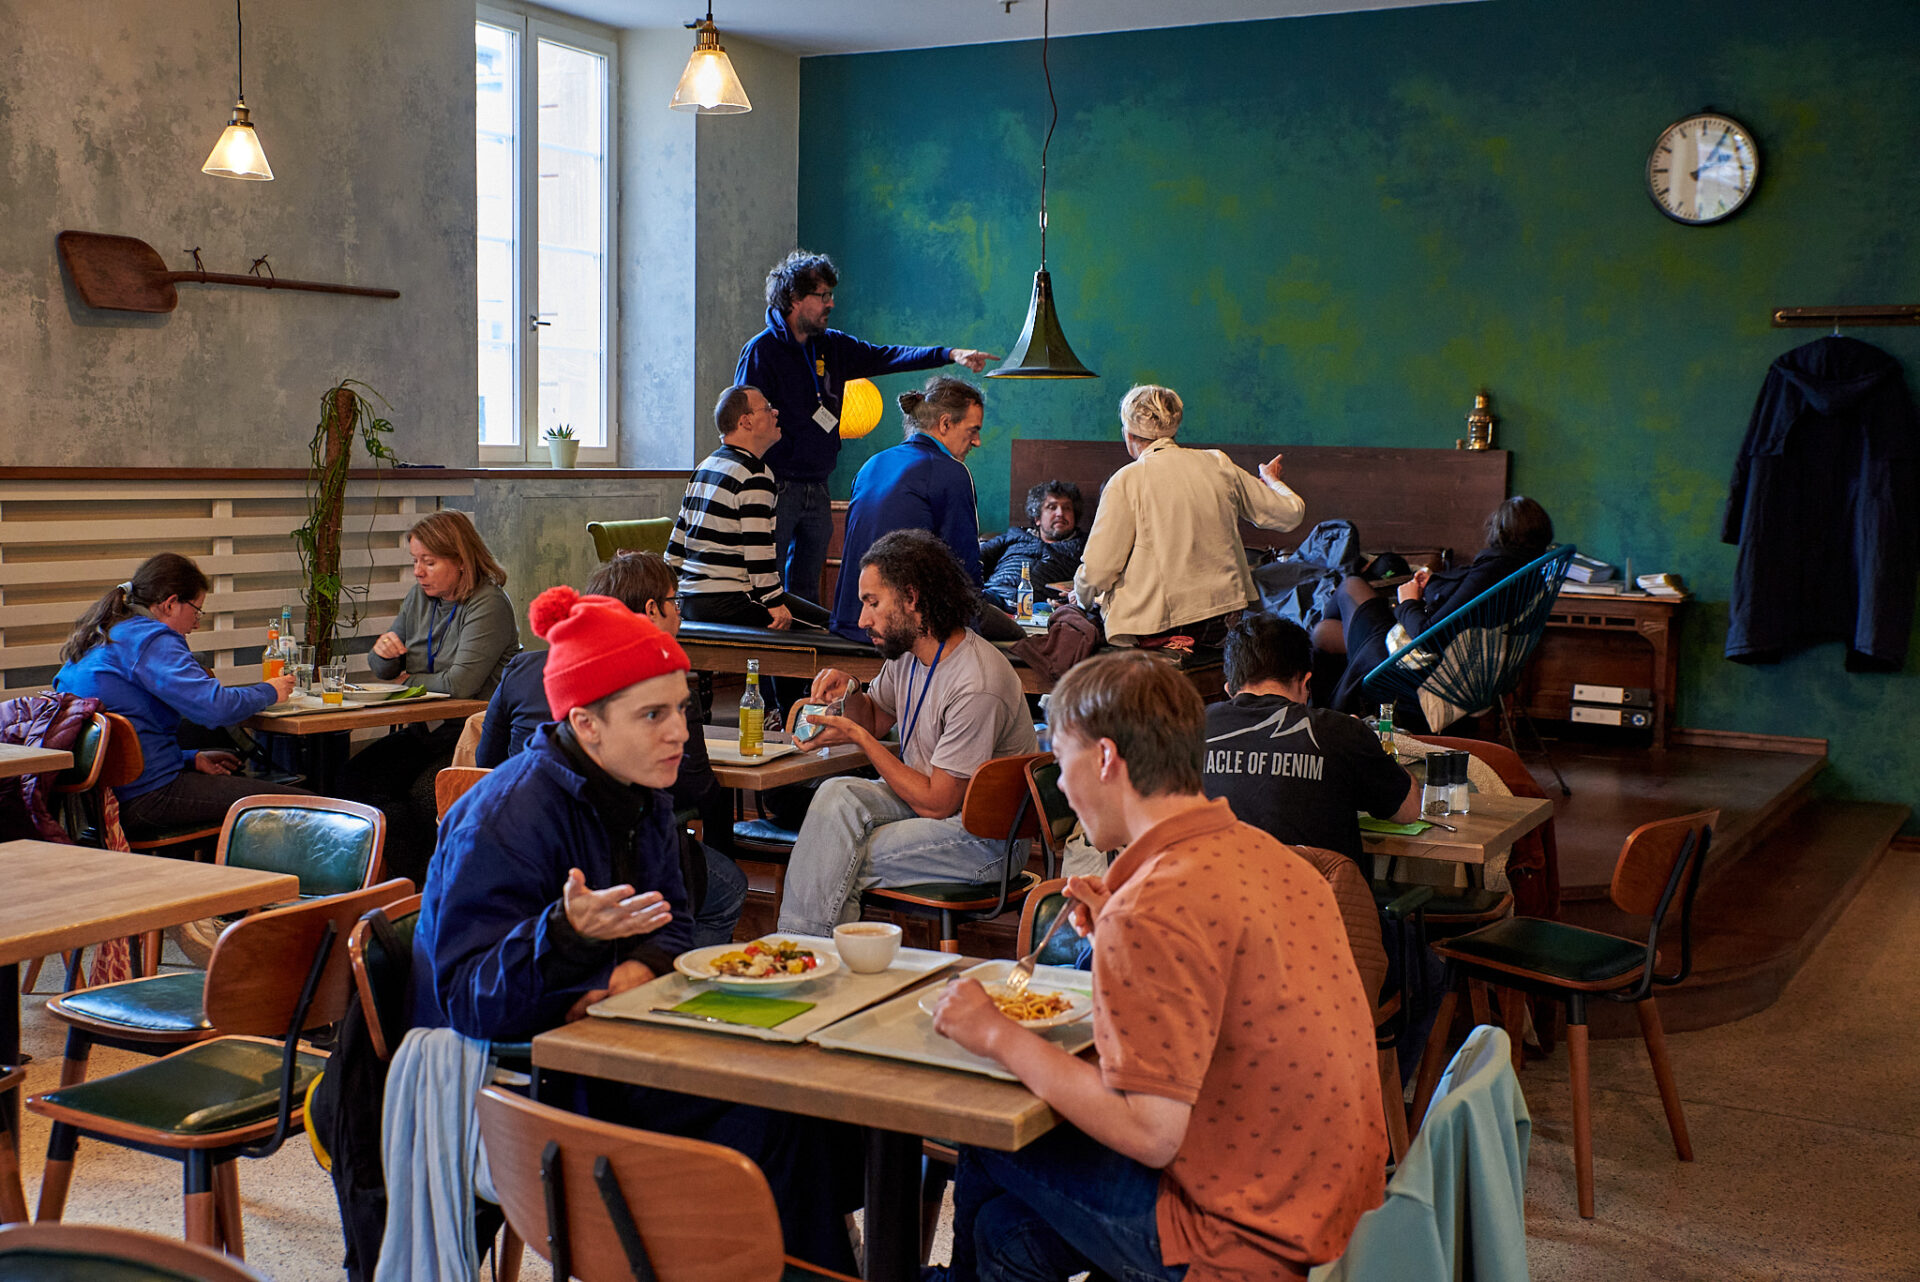 Ein Raum mit einer grün-blauen Wand, warmen Deckenlicht, Tisch- und Stuhlgruppen, an denen Menschen sitzen, essen und sich unterhalten.